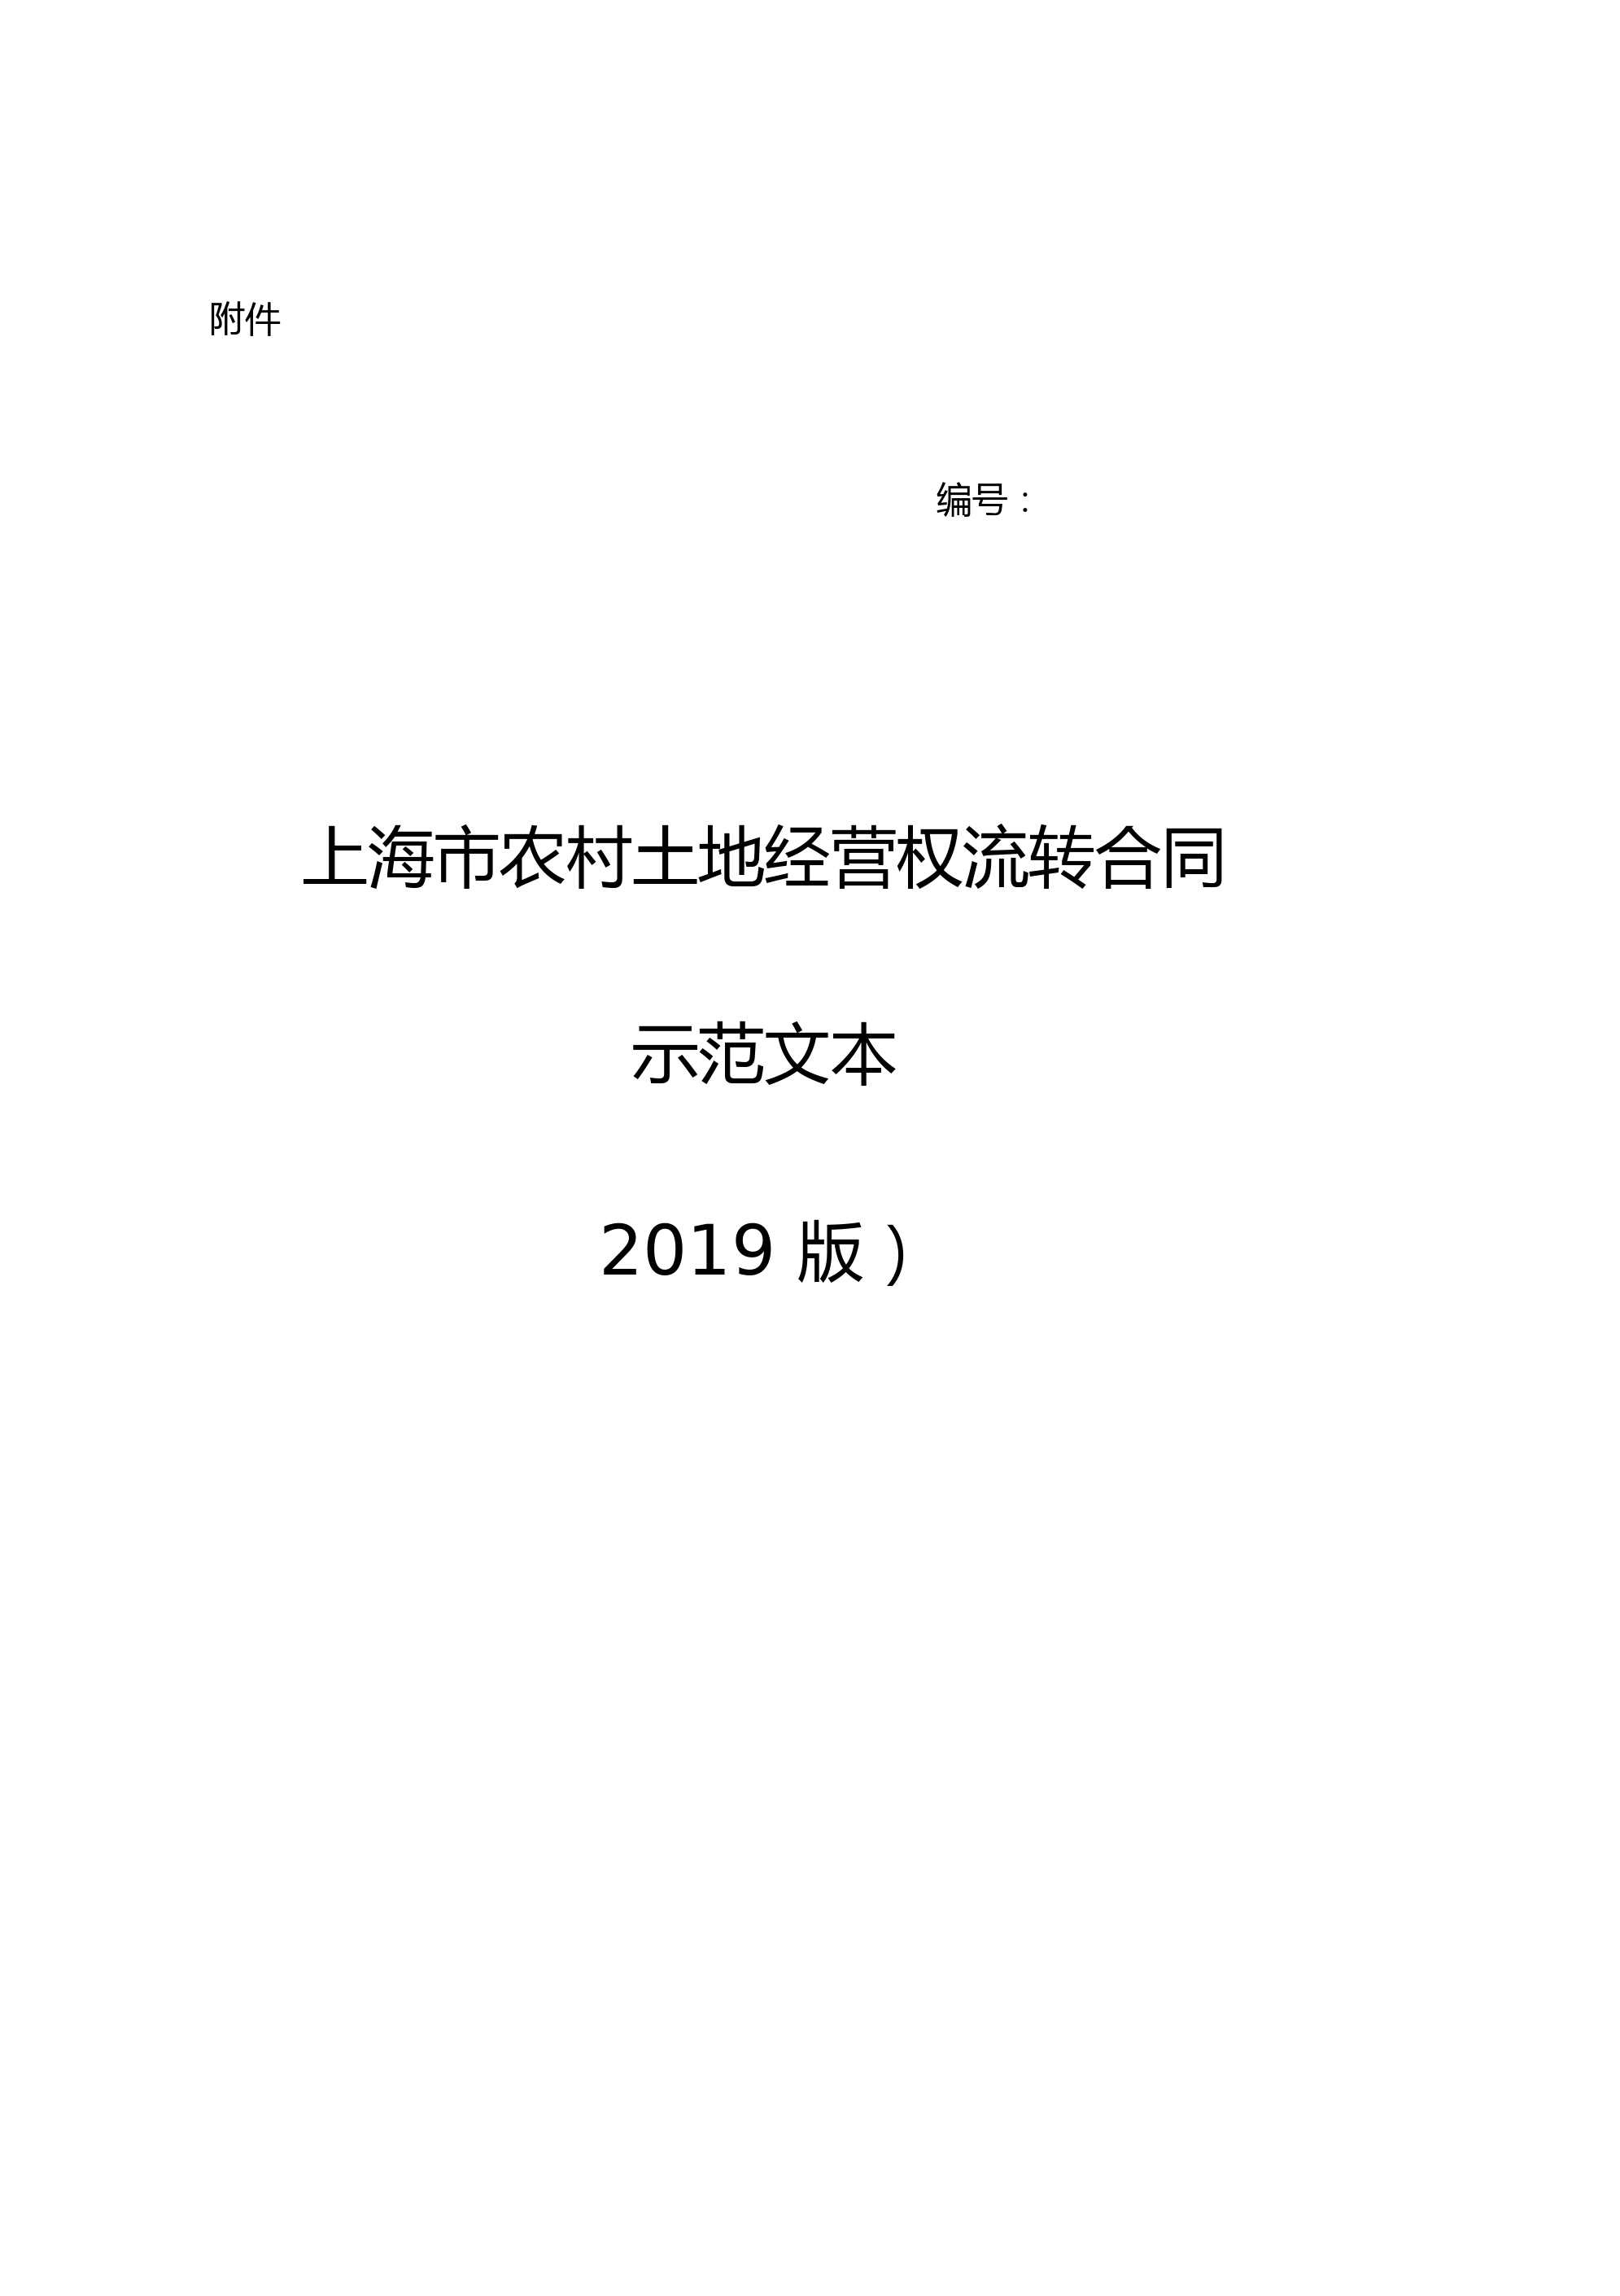 上海市农村土地经营权流转合同示范文本(2019版)